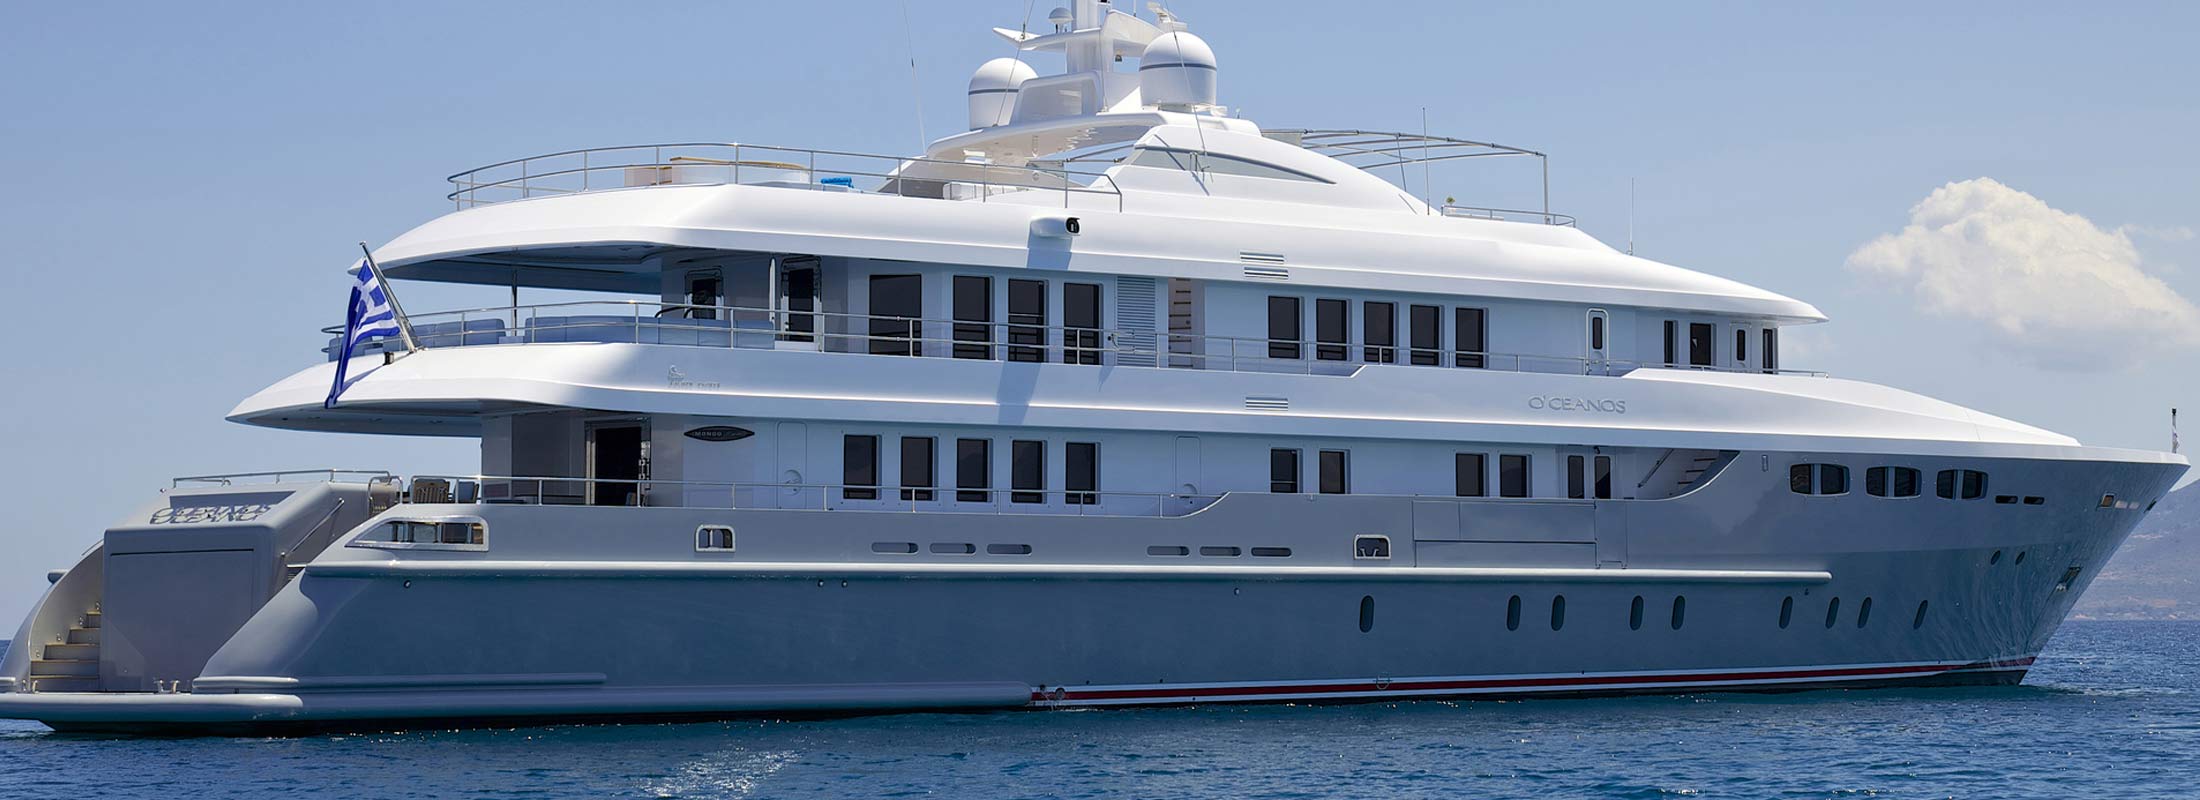 Oceanos Motor Yacht for Charter Mediterranean slider 2